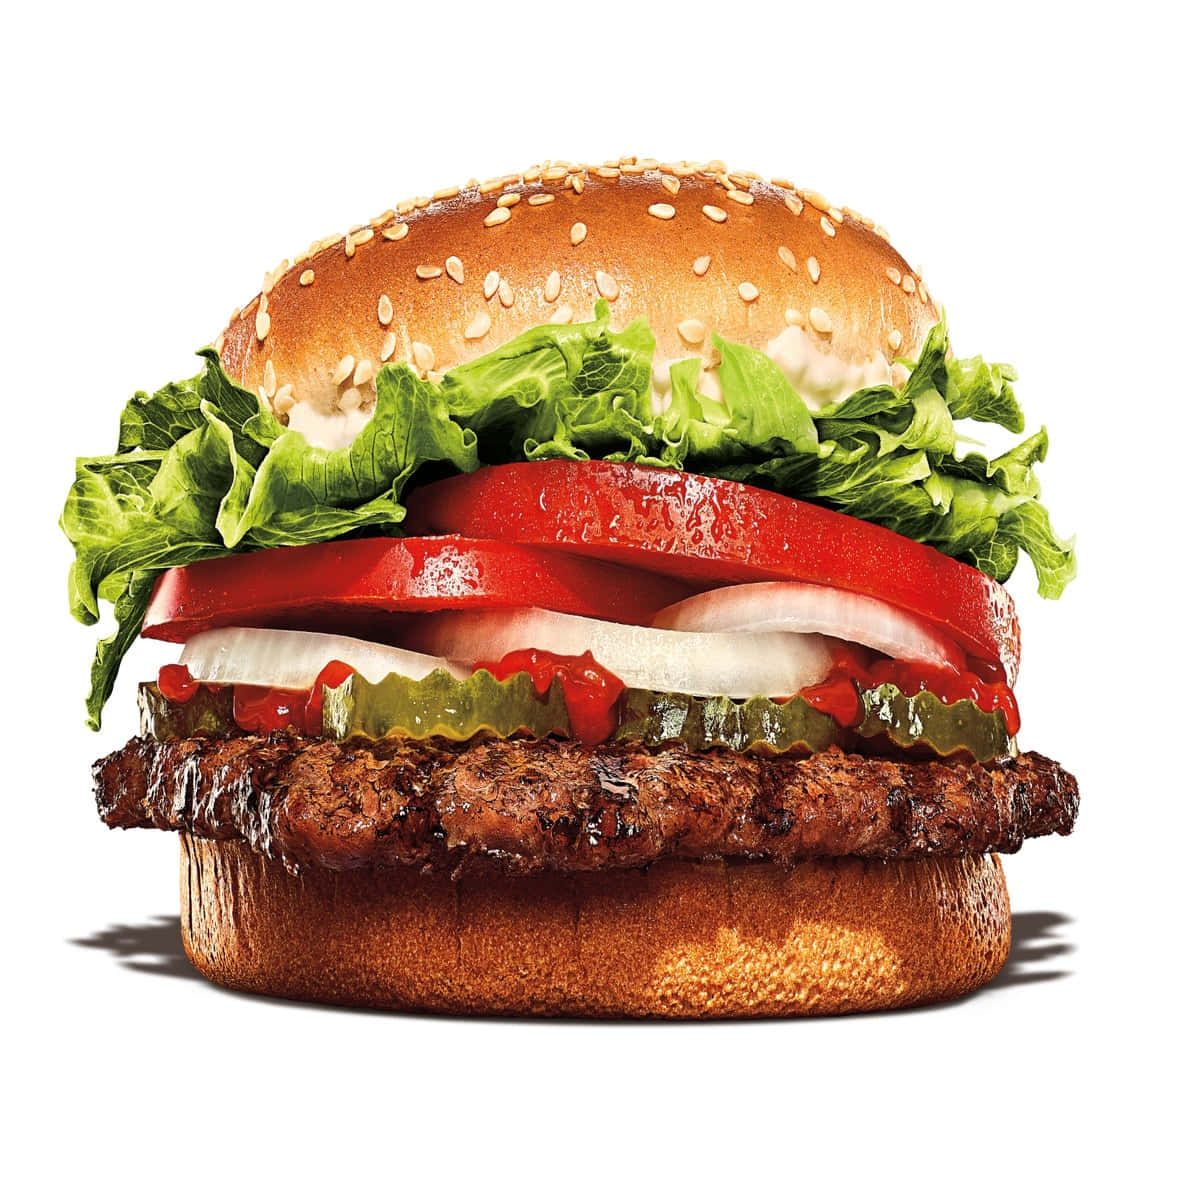 Tilfredsstildin Crave Med Burger King Klassikere!